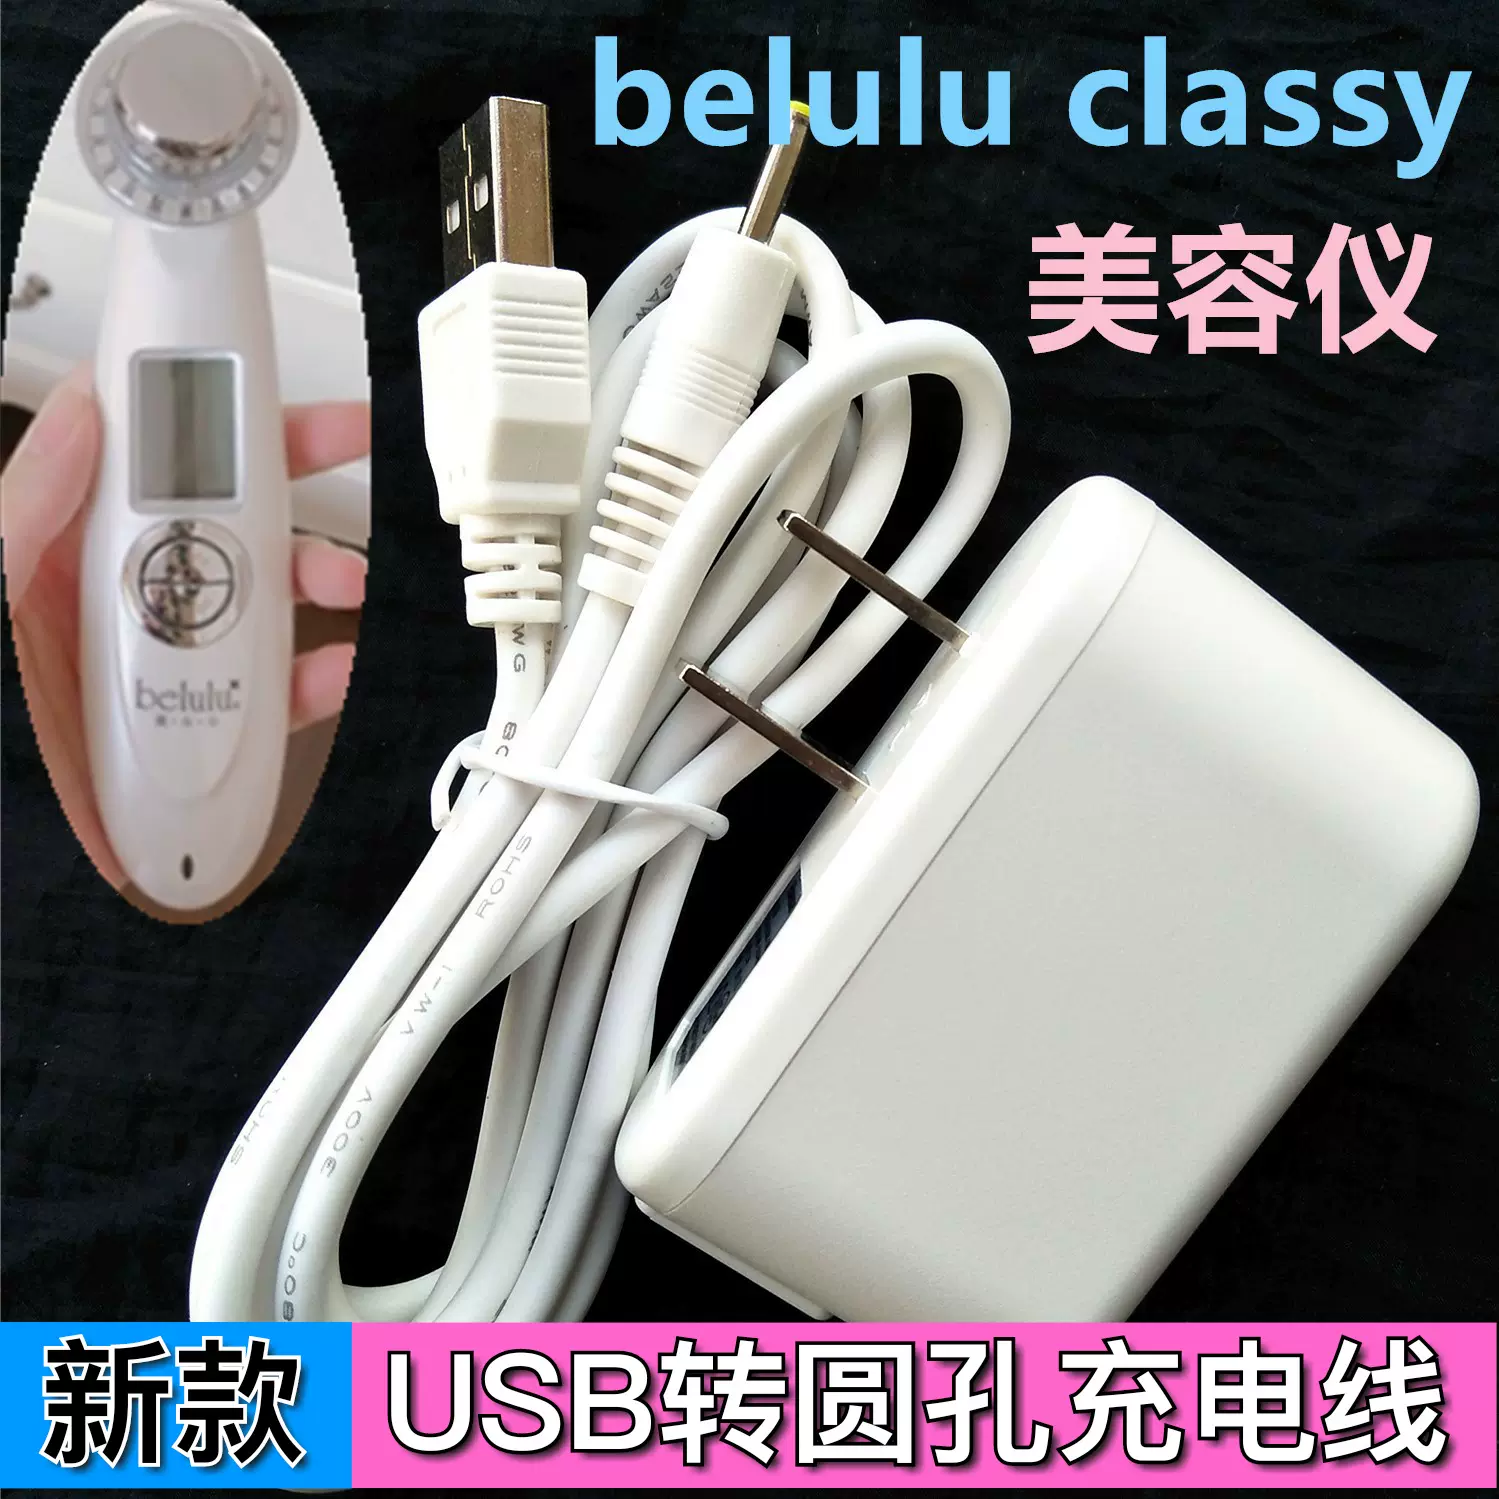 日本belulu classy美容儀器家用臉部潔面儀通用USB充電線數據線-Taobao